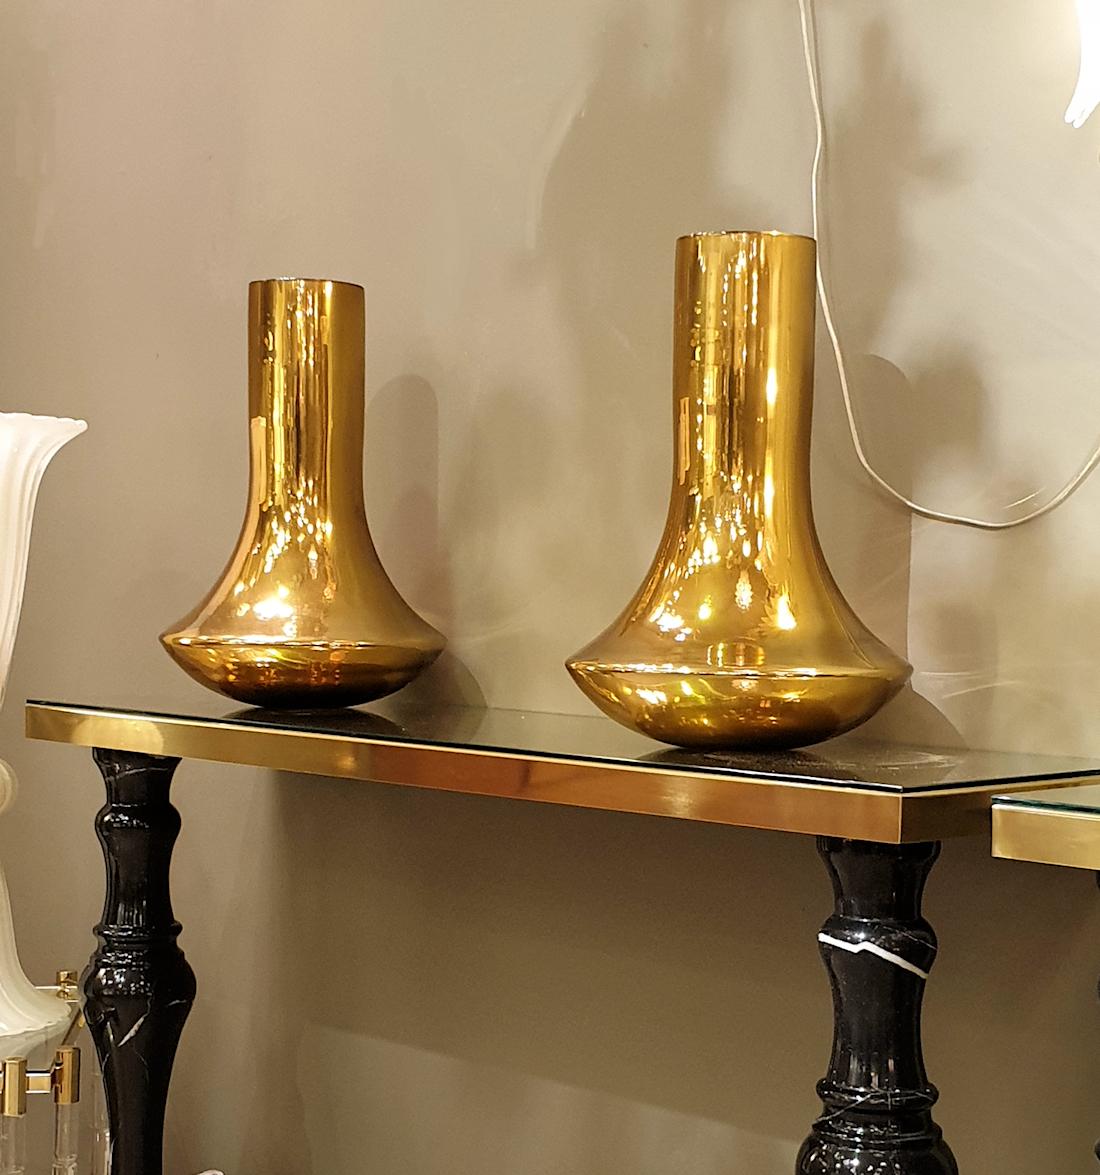 Zwei große Vasen aus goldenem Murano-Glas im modernistischen Stil der Jahrhundertwende.
Das große Vasenpaar ist aus goldenem Murano-Glas mit Spiegeleffekt gefertigt.
Das Glas ist undurchsichtig und hat eine schöne Dicke.
Ihre reinen und einfachen